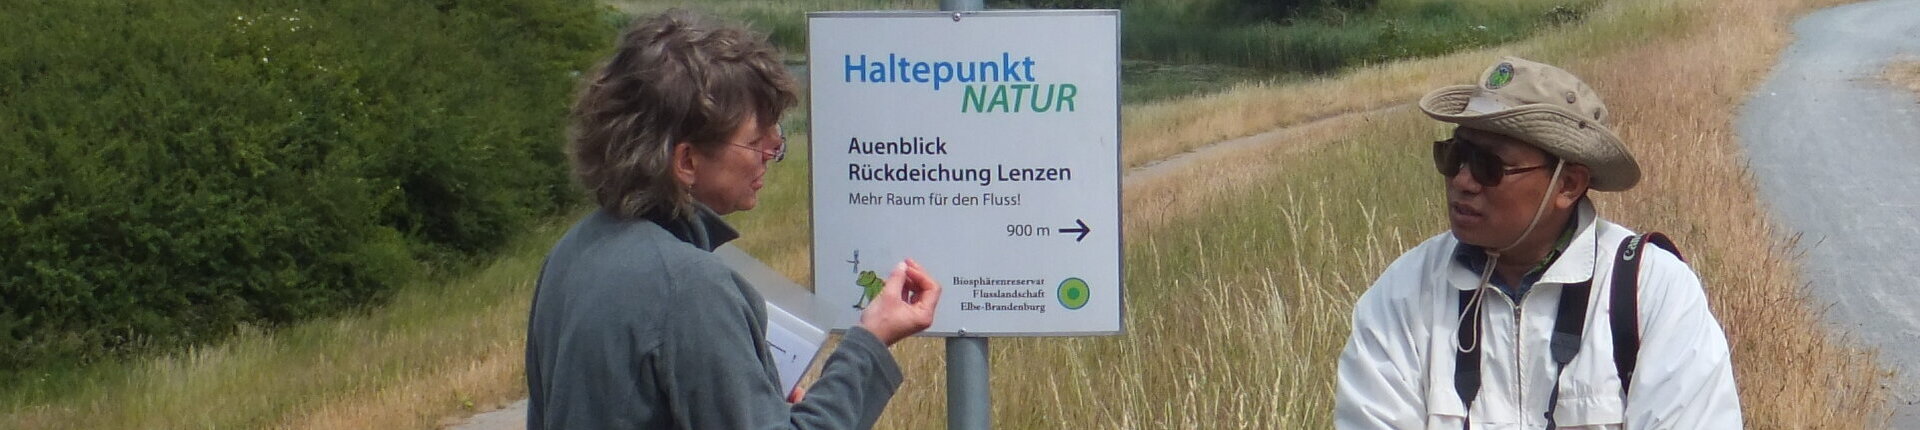 Haltepunkt Natur bei Lenzen (Foto: K. Meuer)